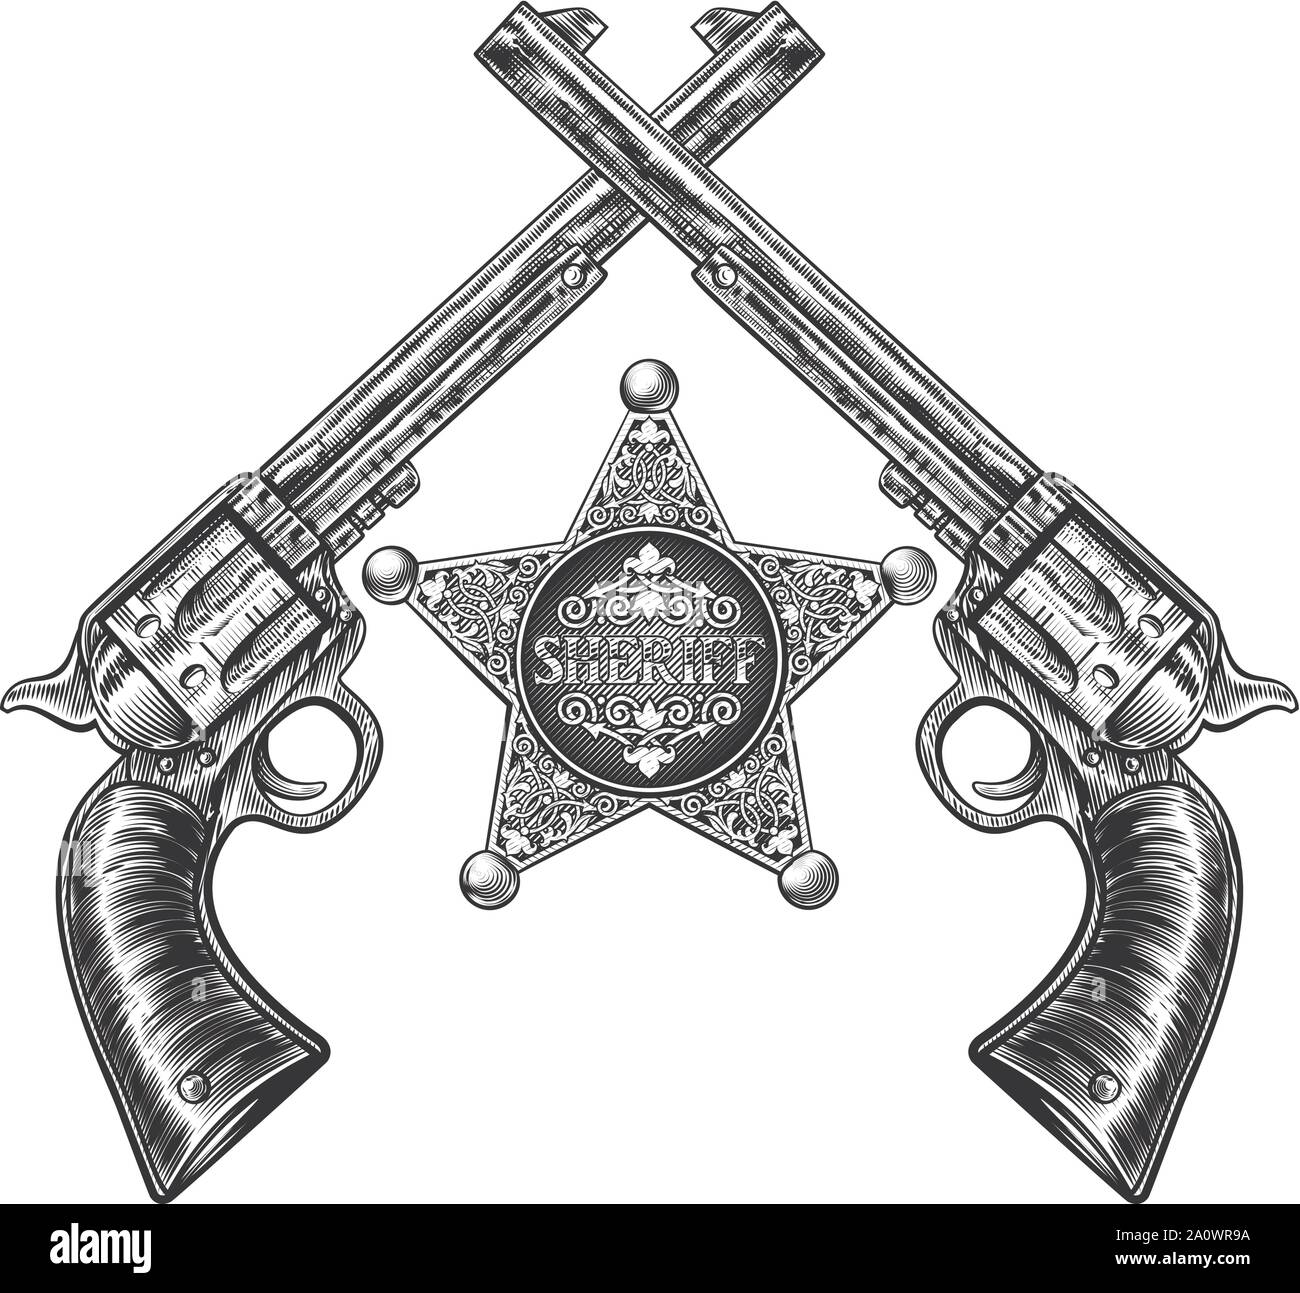 Attraversato pistole e Sheriff Badge a stella Illustrazione Vettoriale